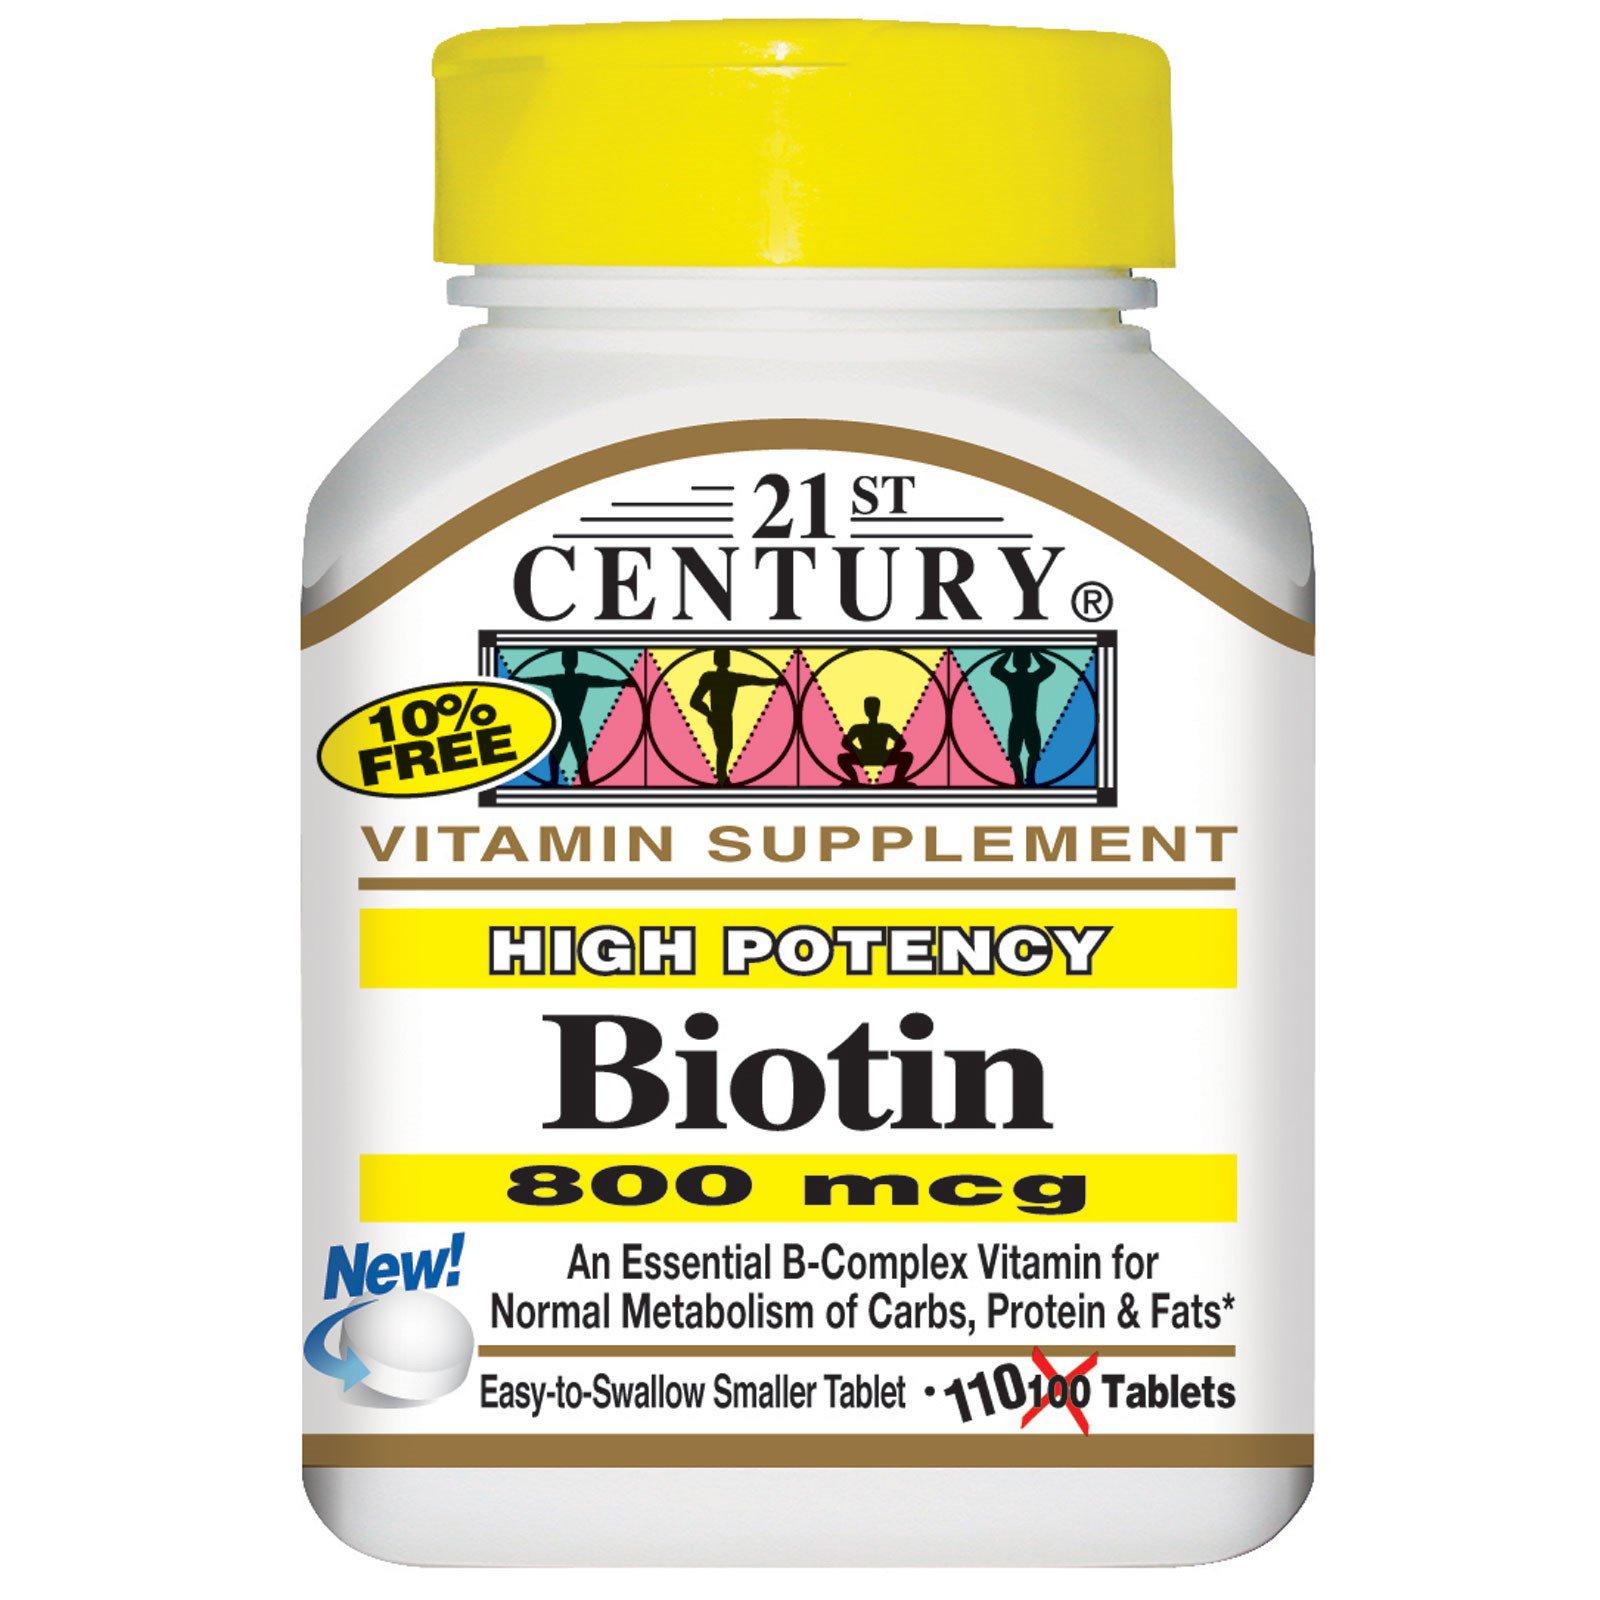 ของแท้ 21st Century Biotin ขนาด 800 mcg x 110 เม็ด ไบโอติน วิตามิน+ แคลเซียม เพื่อสุขภาพของ เส้นผม ผิวหนัง เล็บ